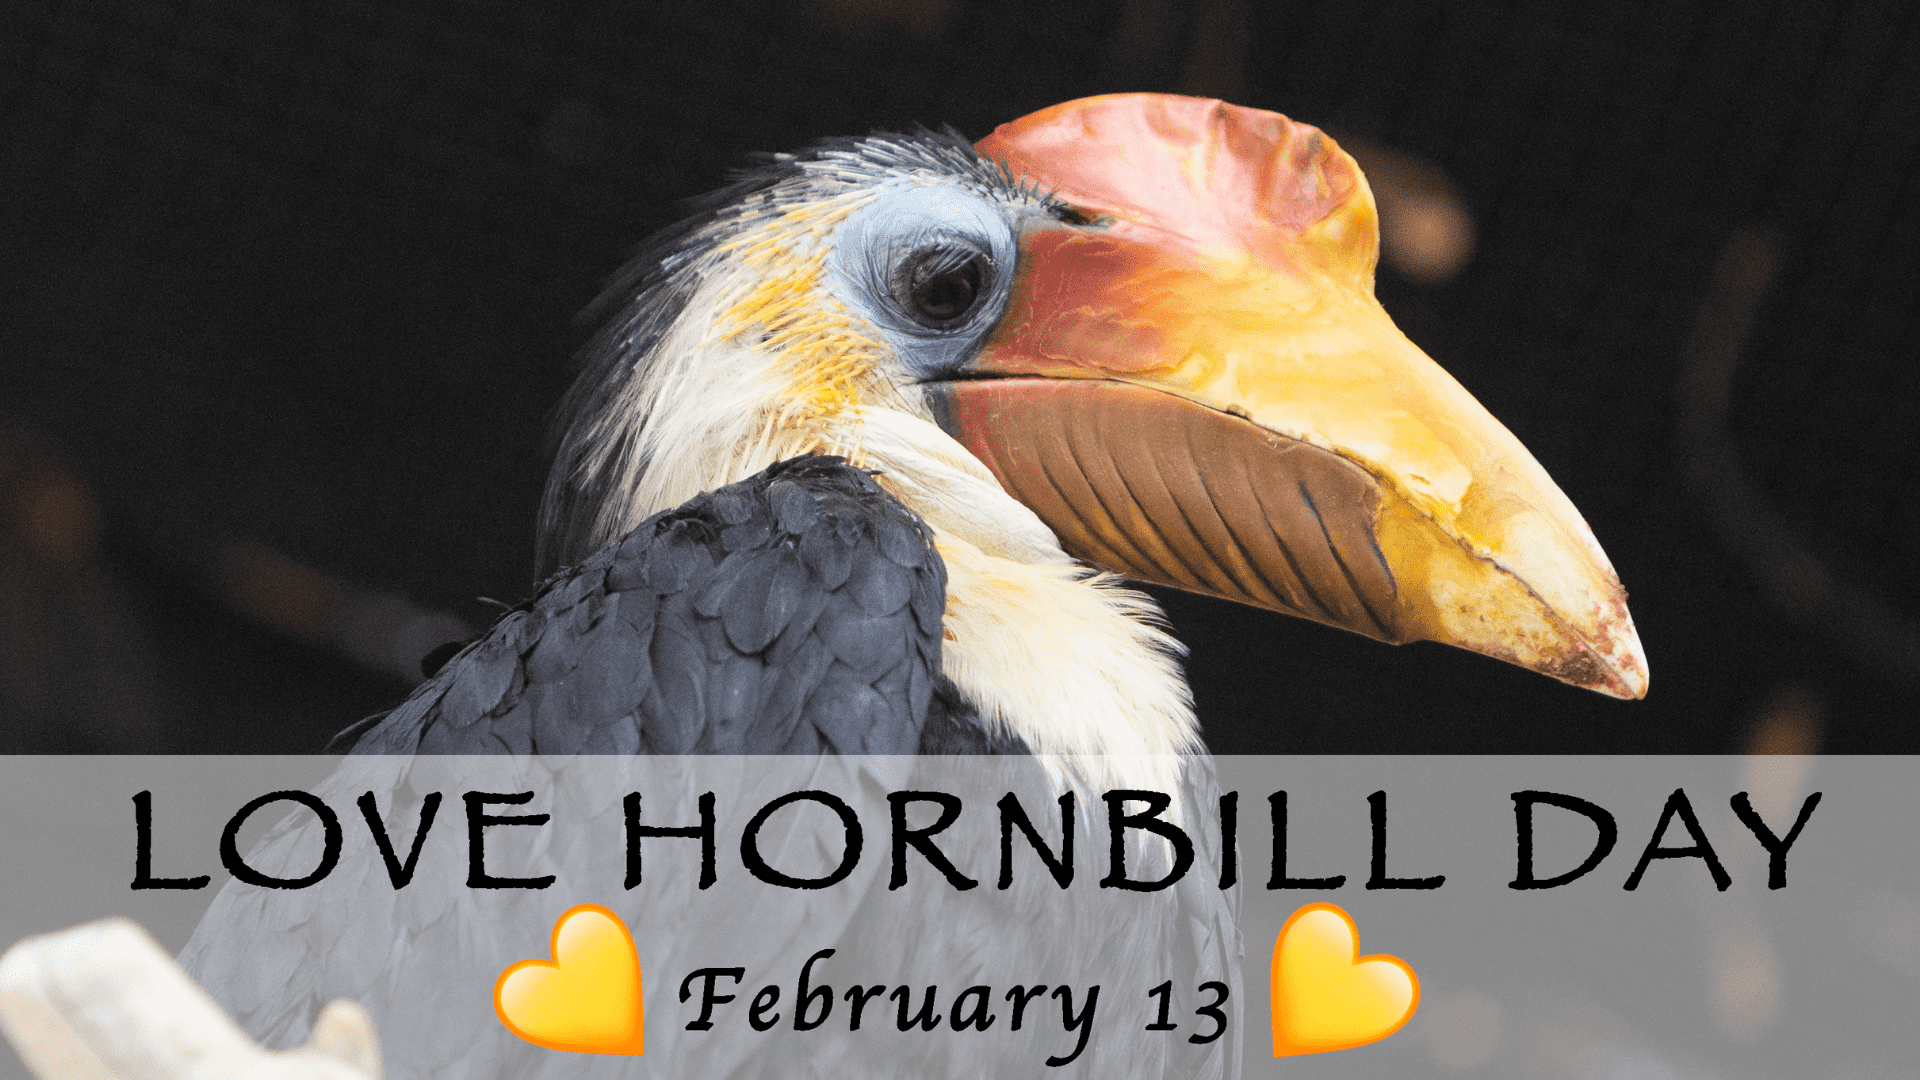 Hornbill day